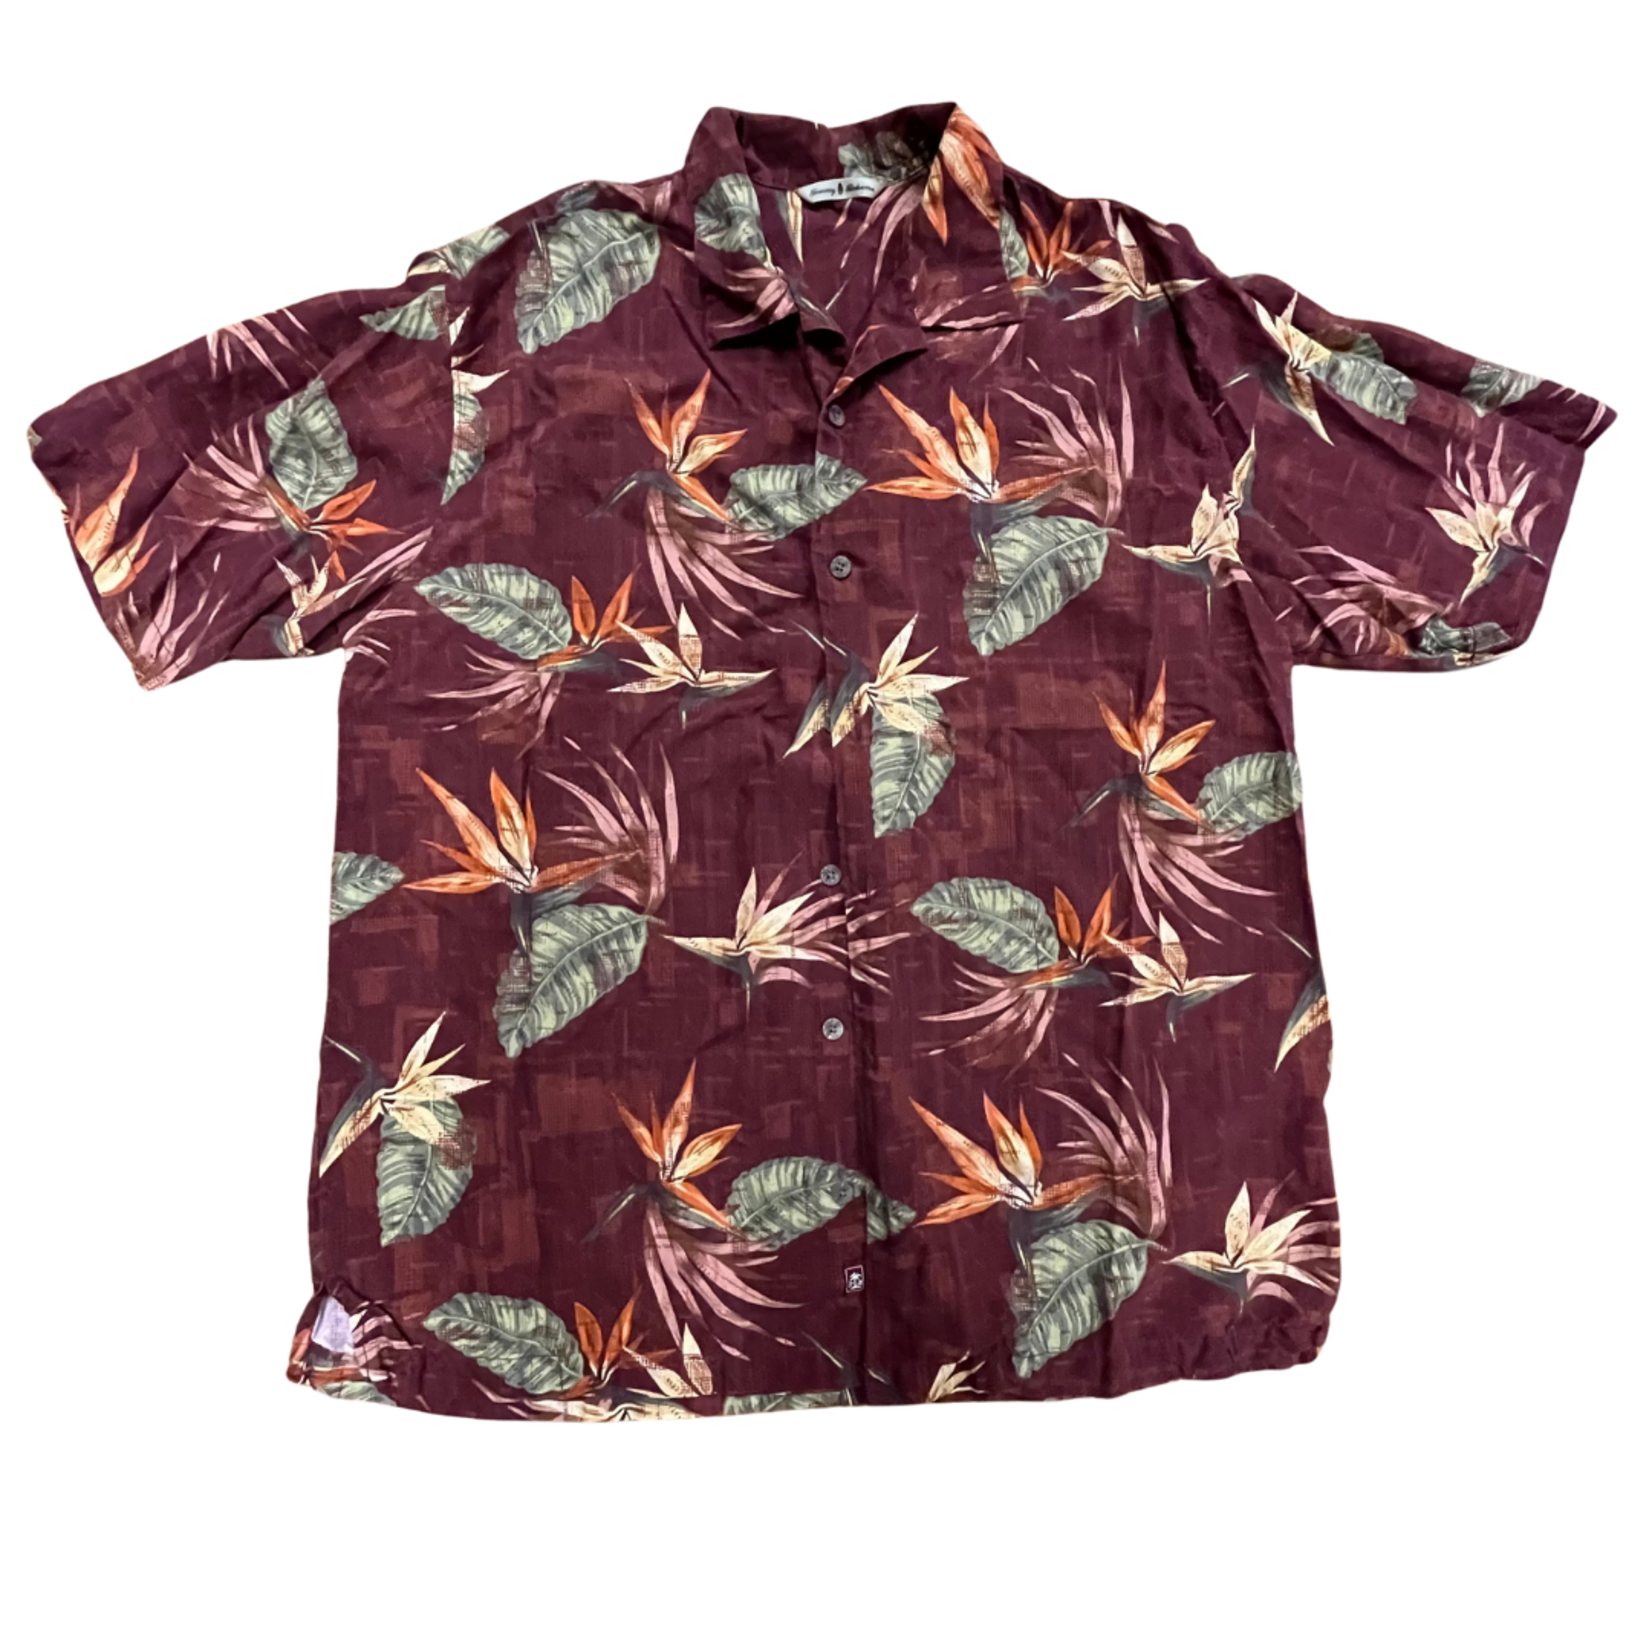 Mission Zero ReLoved Men’s Aloha Shirt - Tommy Bahama 100% Silk - Bird of paradise - Large